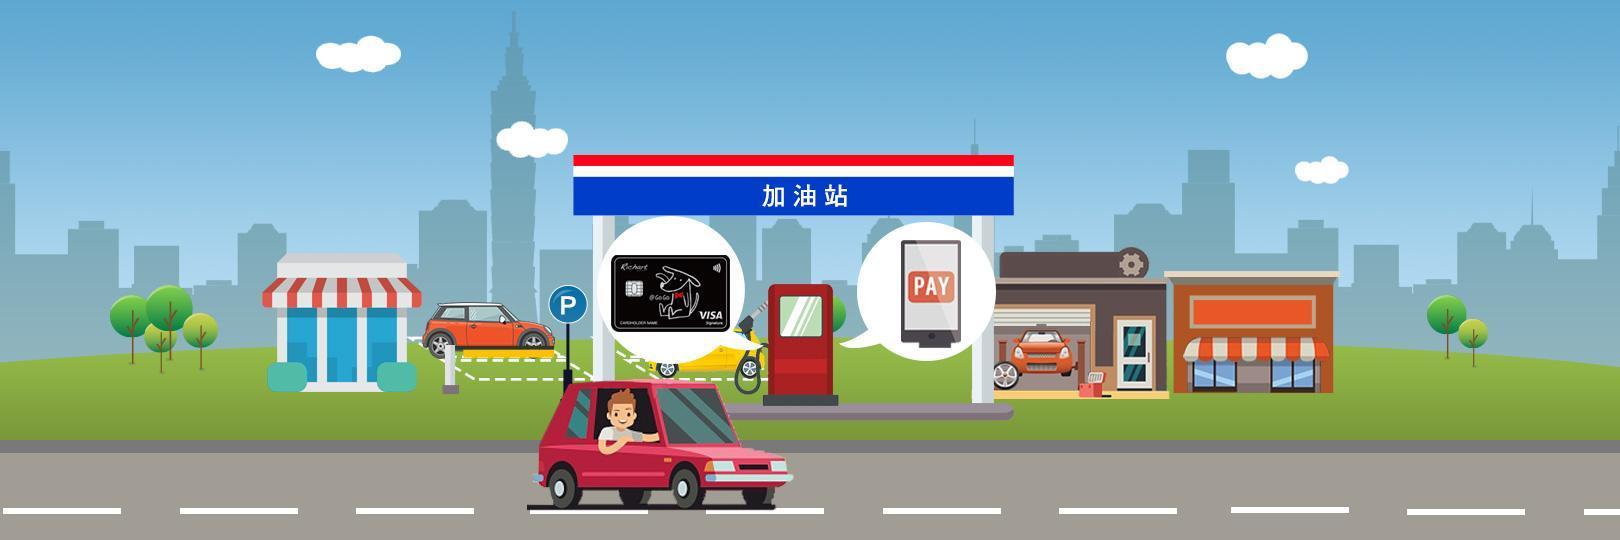 台灣中油/台亞指定加油站LINE Pay綁台新加油滿額抽紅包